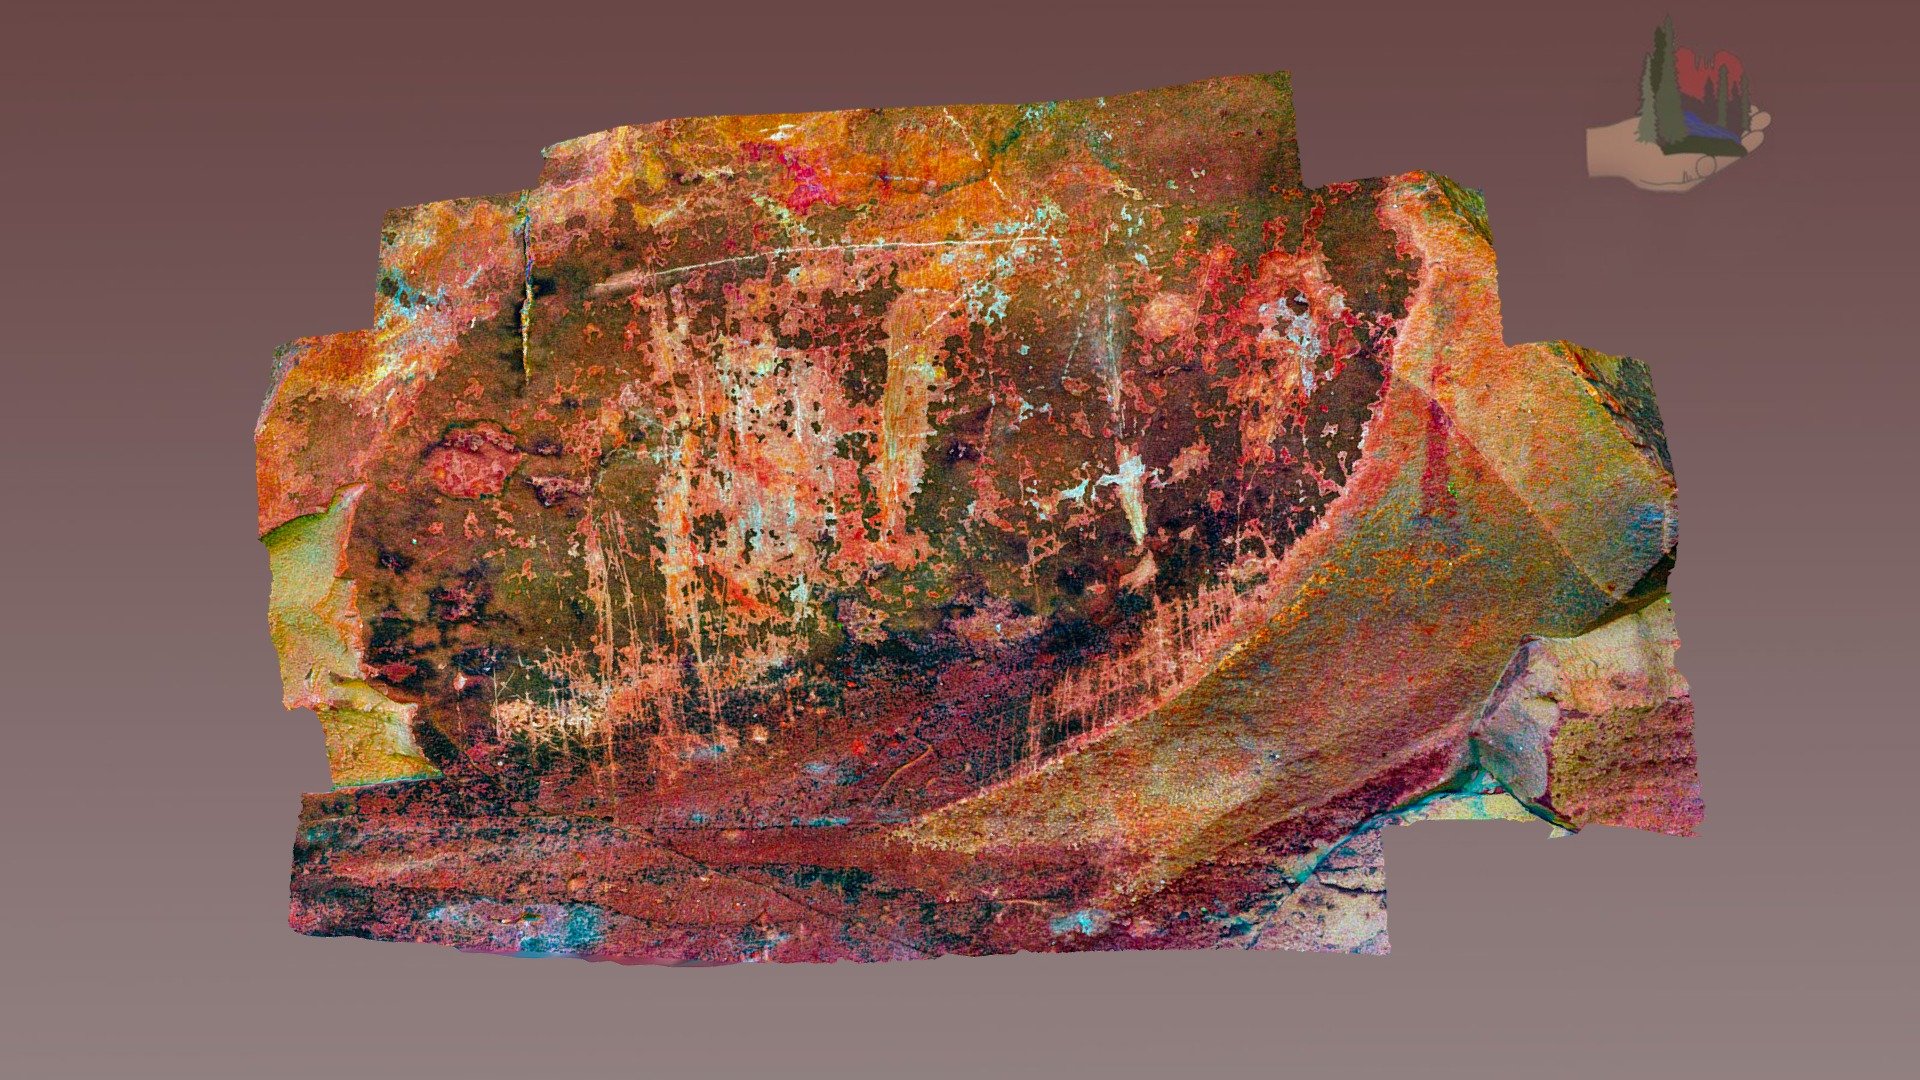 fs1859lab palatki grotto paneli 1 dstretch lab - 3d model fofsedona a270191 küçük kısmı karmaşık bir dizi Olası antik mağara resimleri-arkaik dönem geç arkaik 217 North 100 West apache görüntü bindirilmiş muhtemelen eski öncesi superpositioning resimli uyarılar fs1859 kullanılan aynı giriş fotoğraf kullanır ama algoritma laboratuvar türleri boya süperpozisyon belirleyen renk varyasyonları geliştirmek işlenmiş devam eden proje sembolü kaşıma üzerine genç görüntüleri değerlendirmek red rock bölgesinde coconino ormanı ek bilgi aşağıdaki bulunan web siteleri http wwwsedonaredrocktrailsorg wwwfsusdagov recmain Rekreasyon gönüllülük fırsatları diğer projeler wwwfriendsoftheforestsedonaorg bulunabileceği oluşturma modelleri dahil olmak üzere orman 3D print model - Mito3D